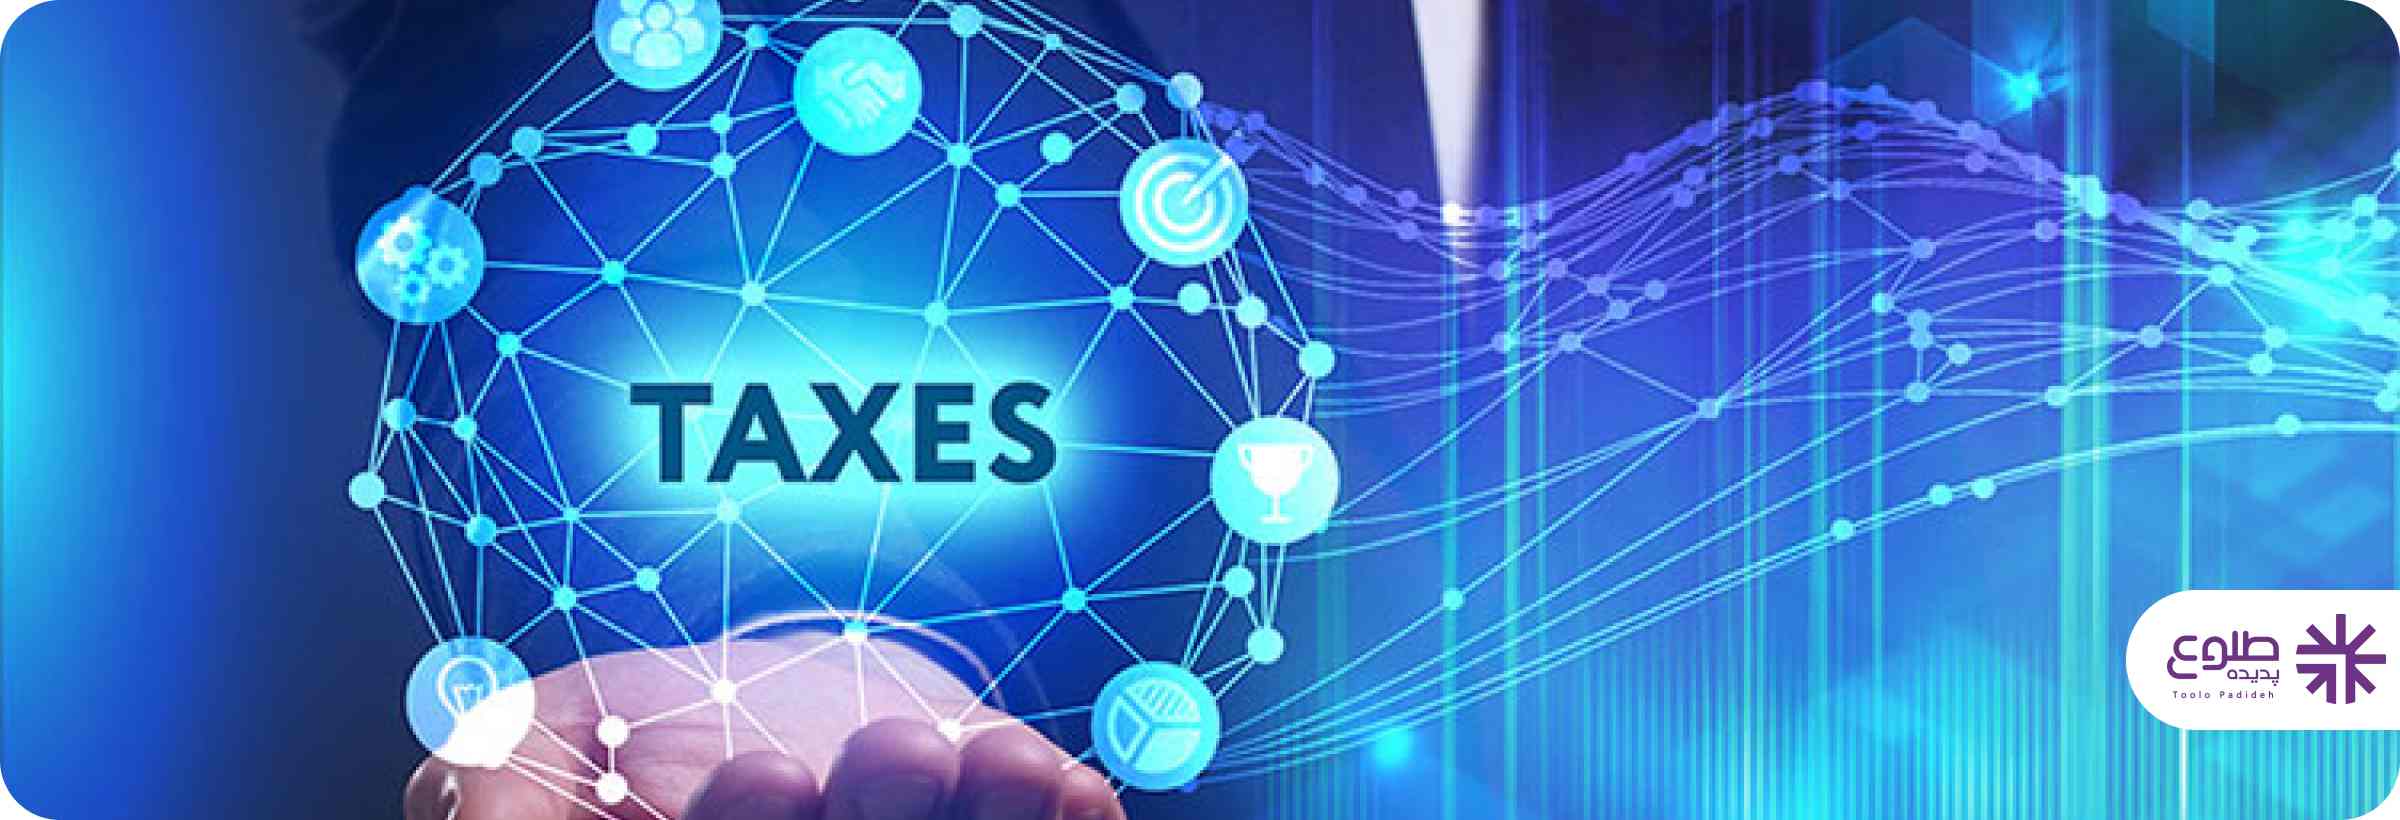 مراحل پرداخت مالیات مربوط به کسب و کارهای اینترنتی